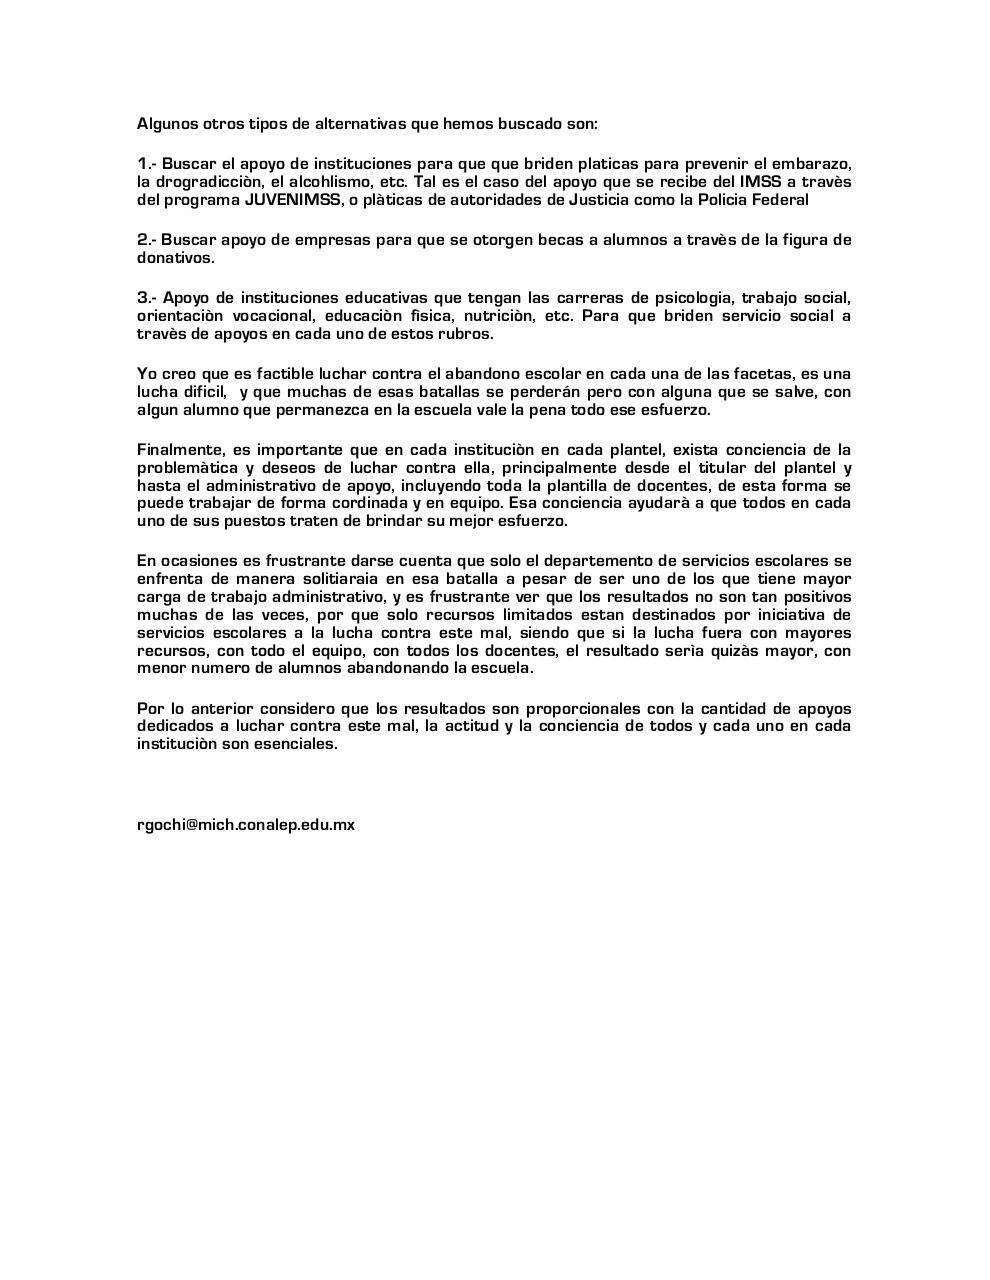 Â¡VOLEMOS VS EL ABANDONO ESCOLA .pdf - página 2/3